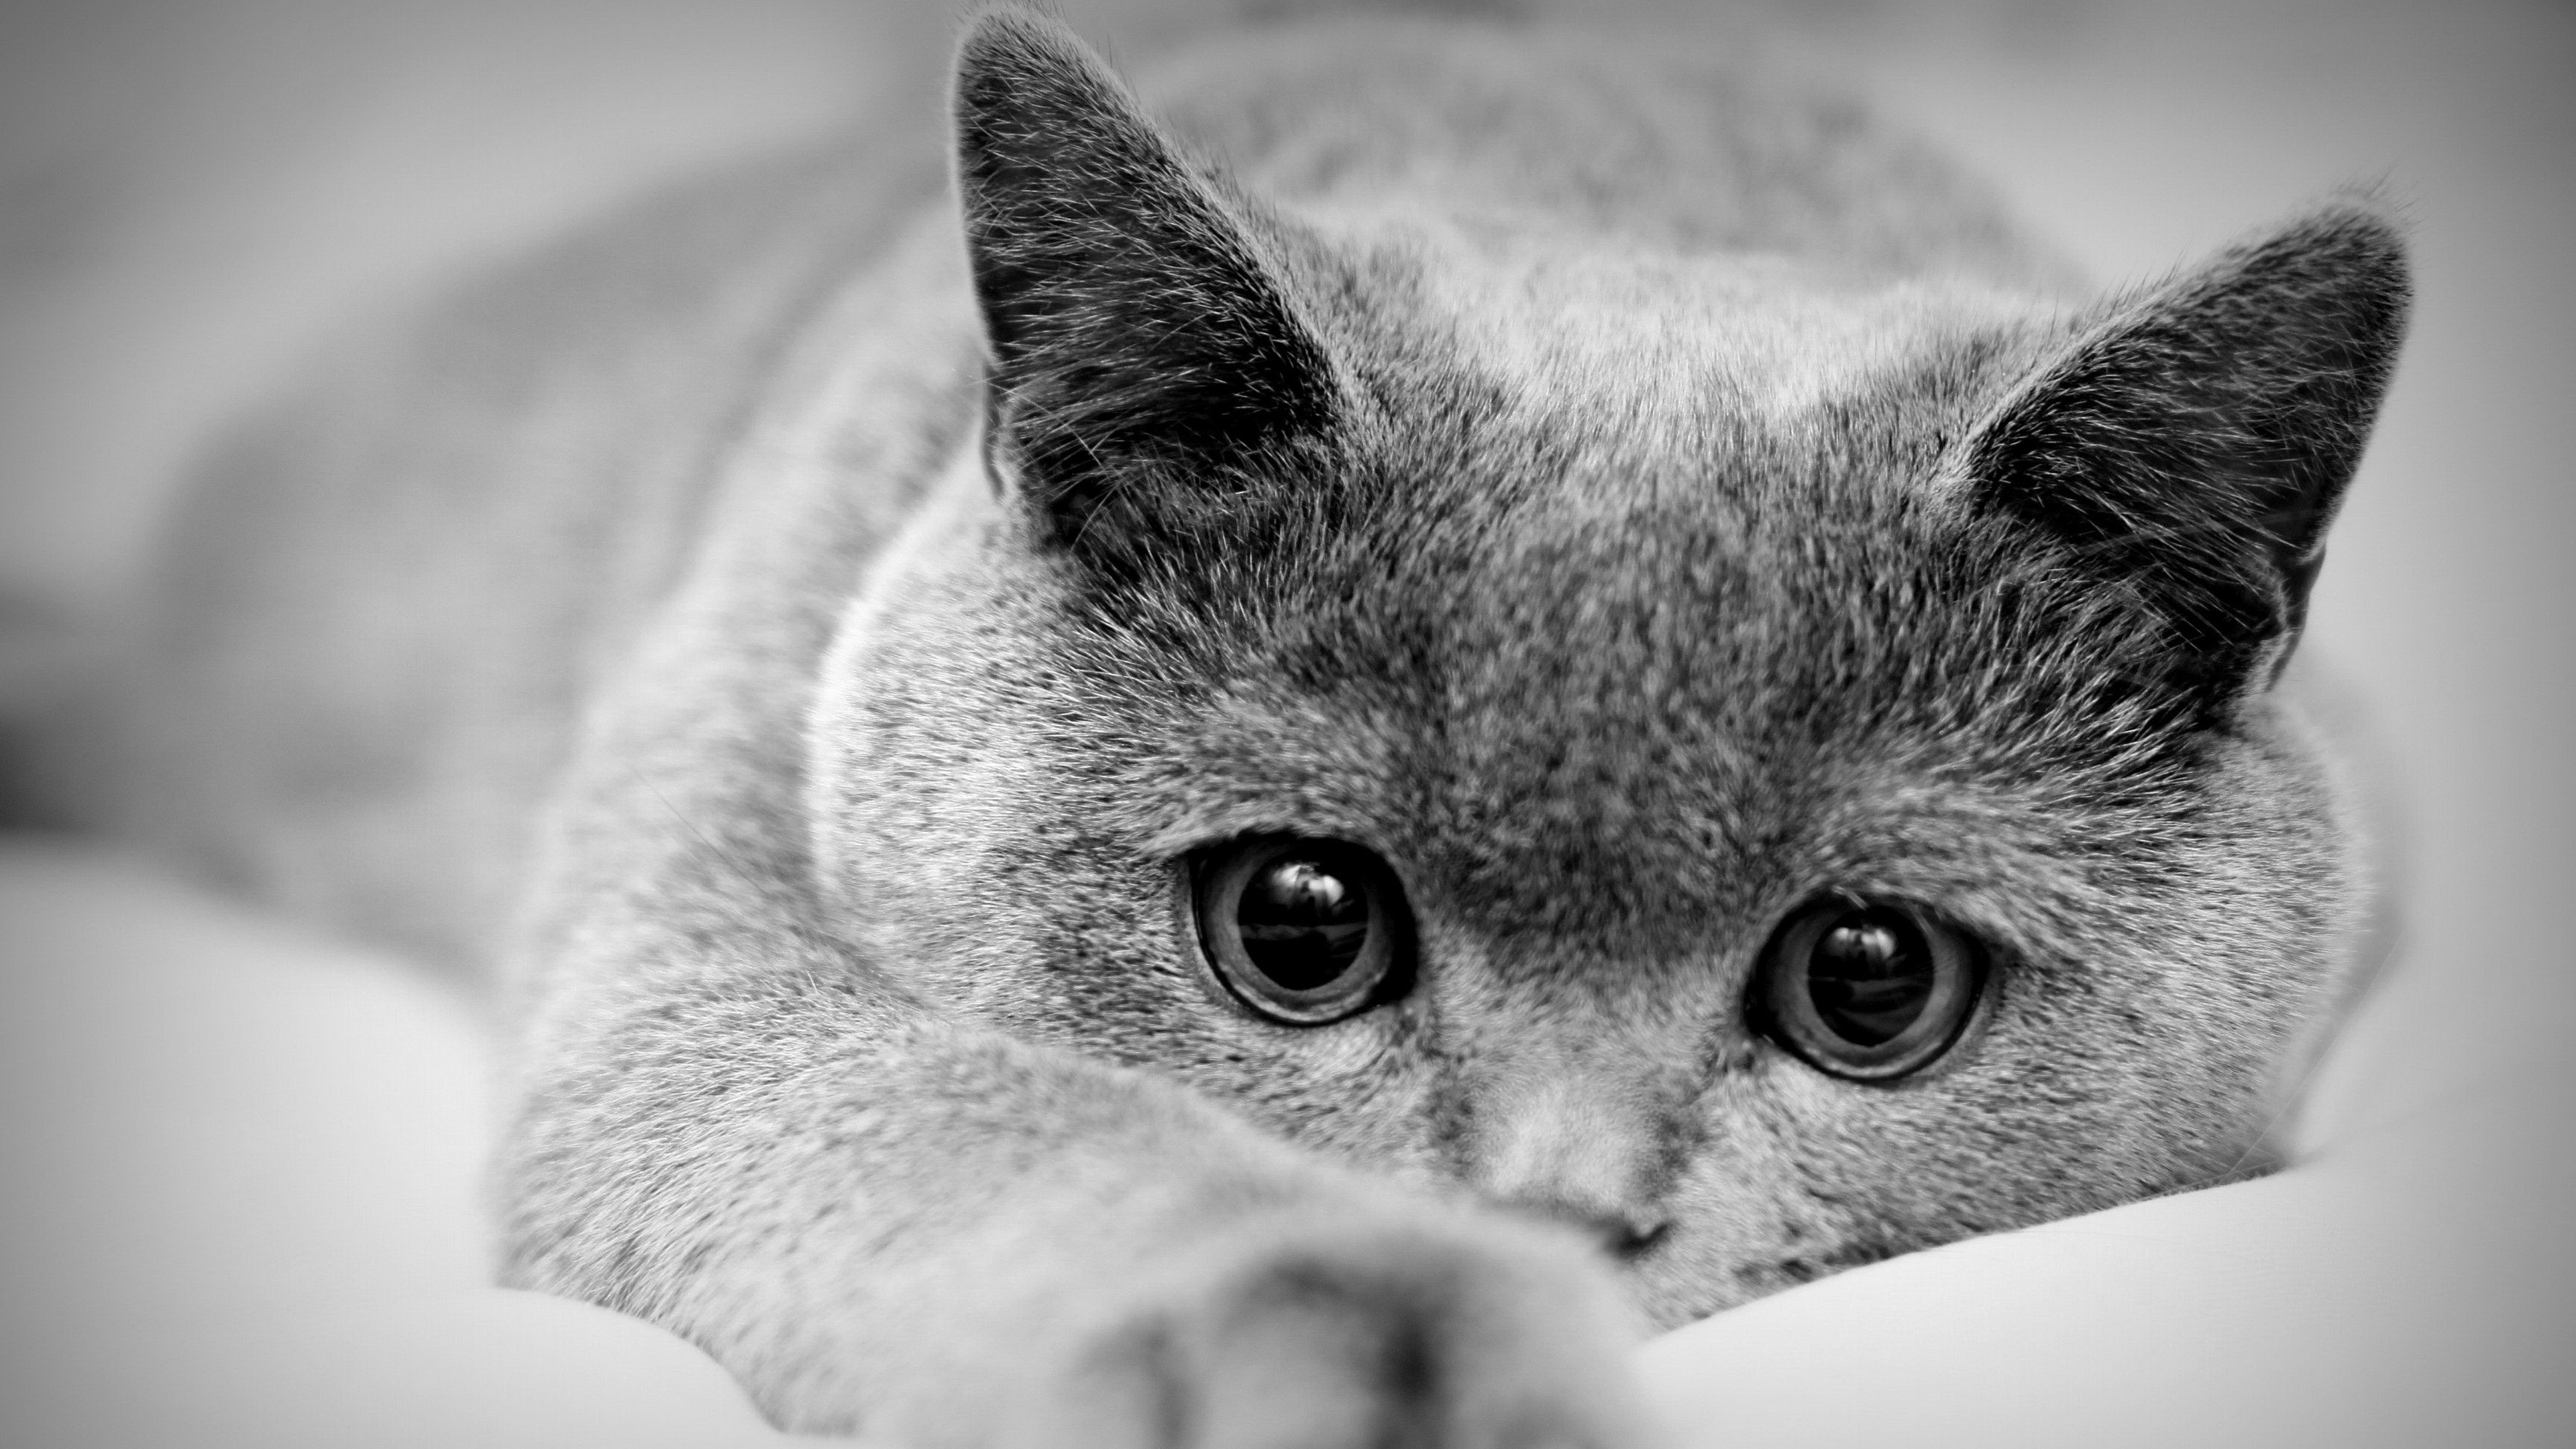 Картинки очень. Красивые черно белые картинки. Красивая картинка чеонобел. Грустная кошка. Скучающий кот.